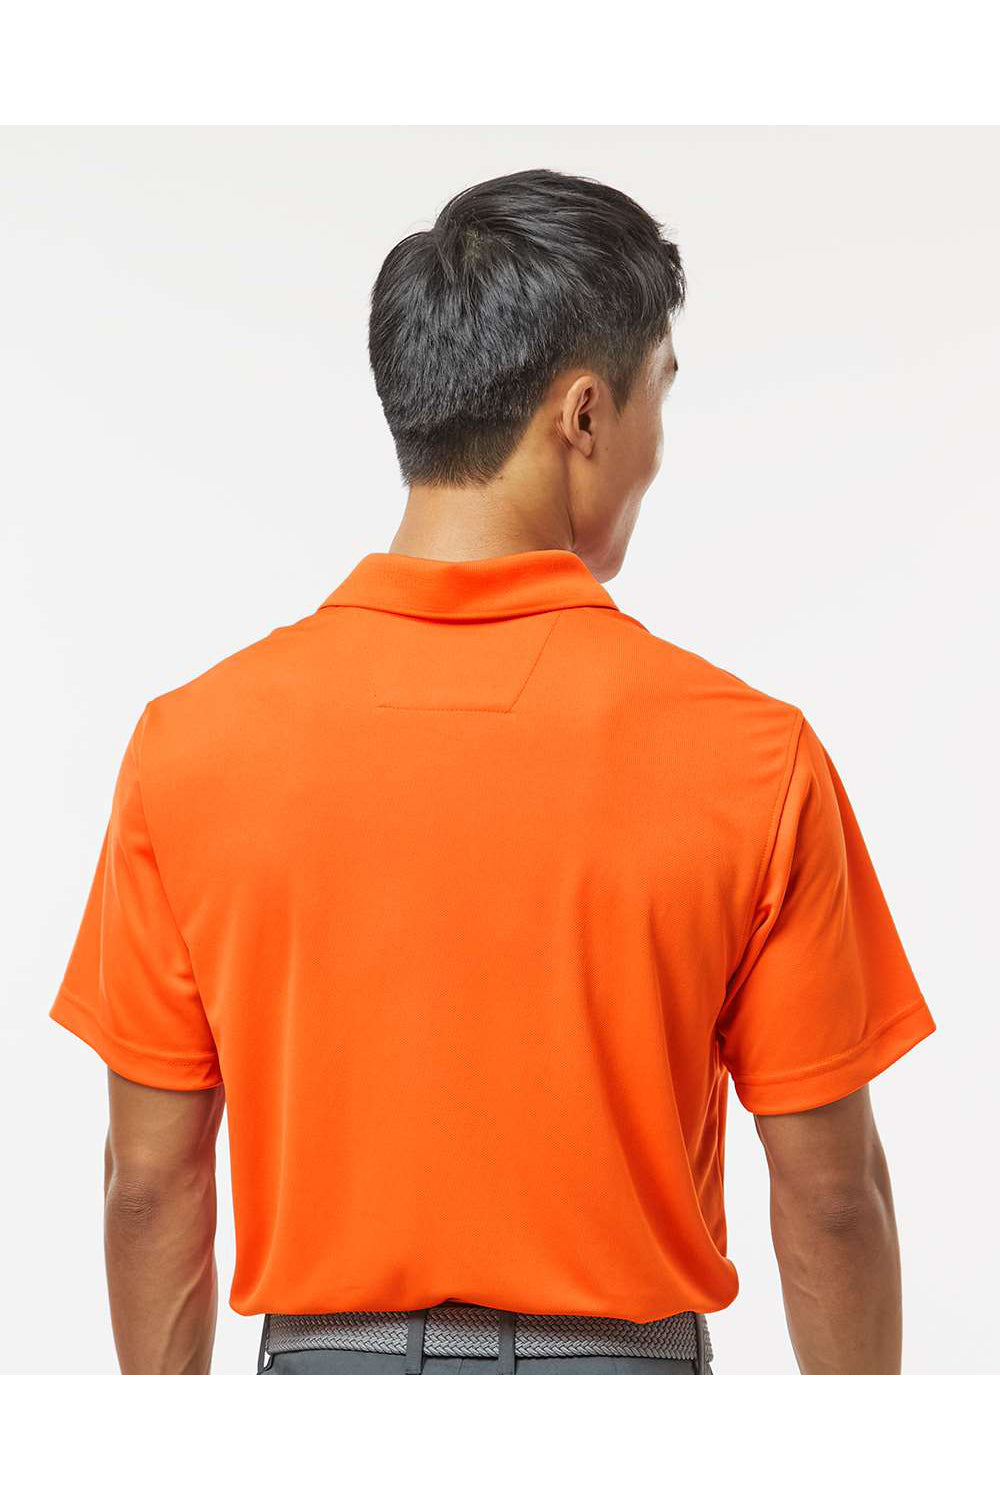 Paragon 100 Mens Saratoga Performance Mini Mesh Short Sleeve Polo Shirt Orange Model Back